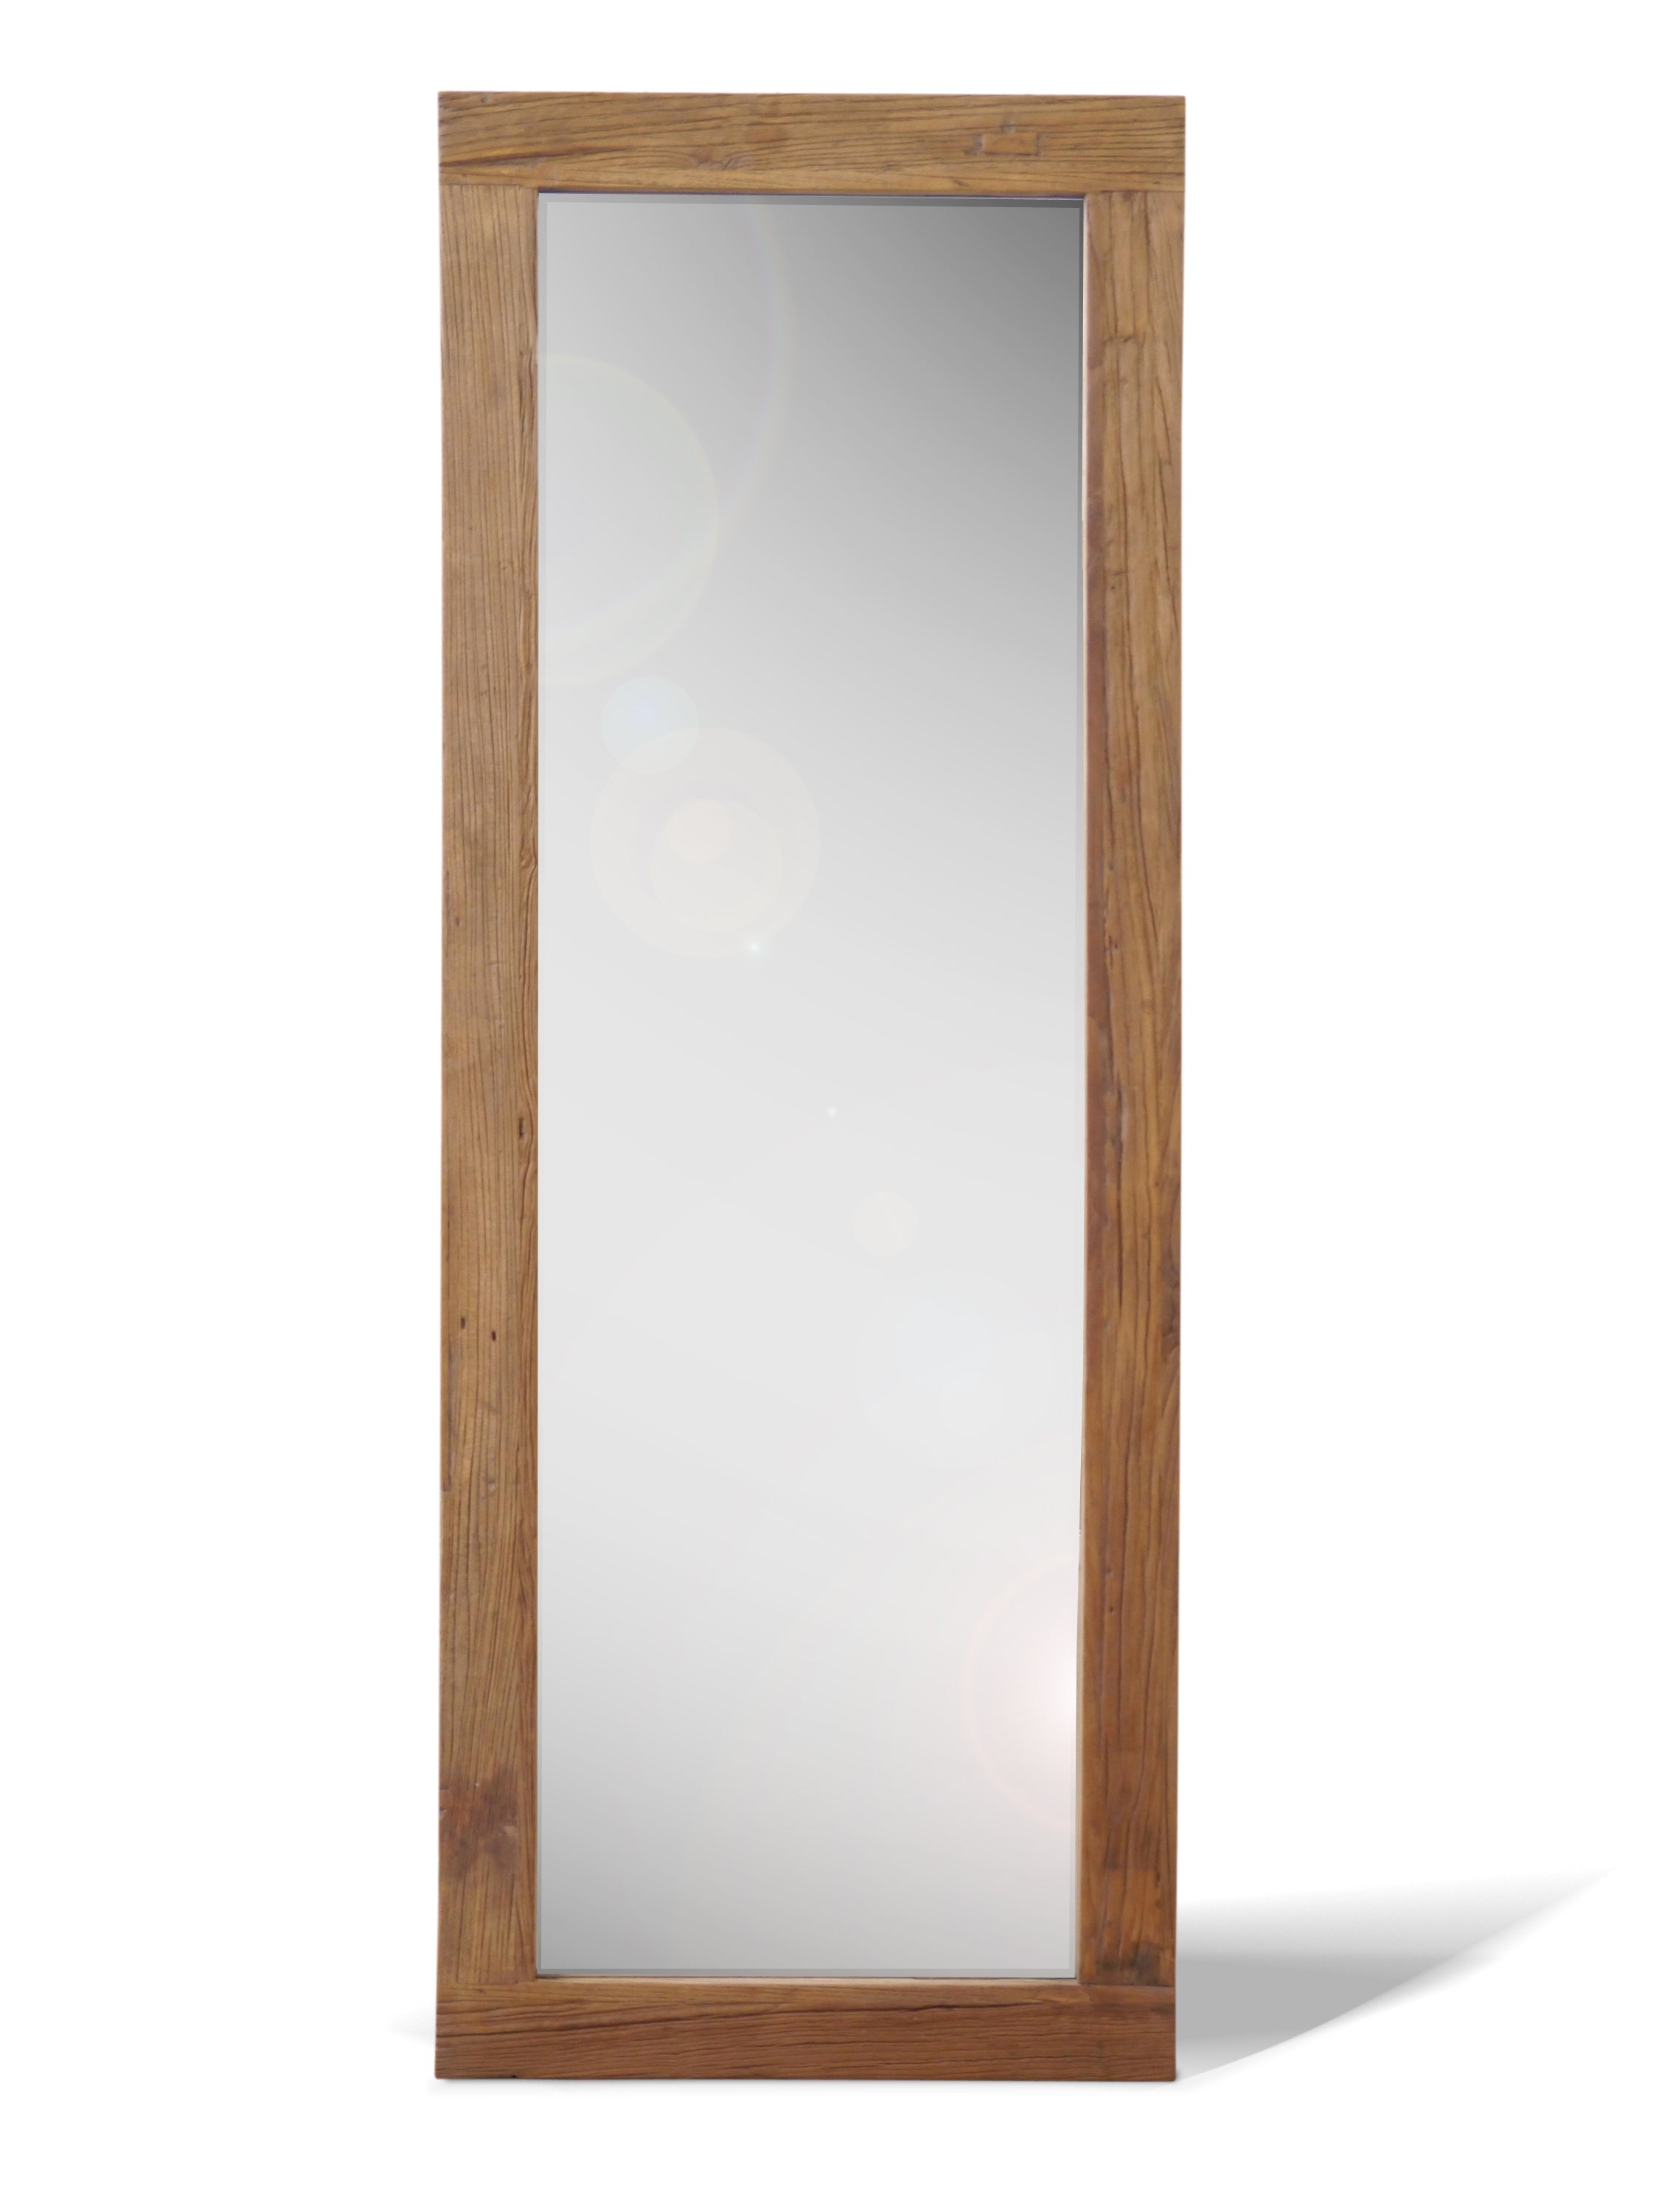 ひつじ商品一覧GALLUP 鏡 ミラー 額装 木製 古材 アンティーク ビンテージ